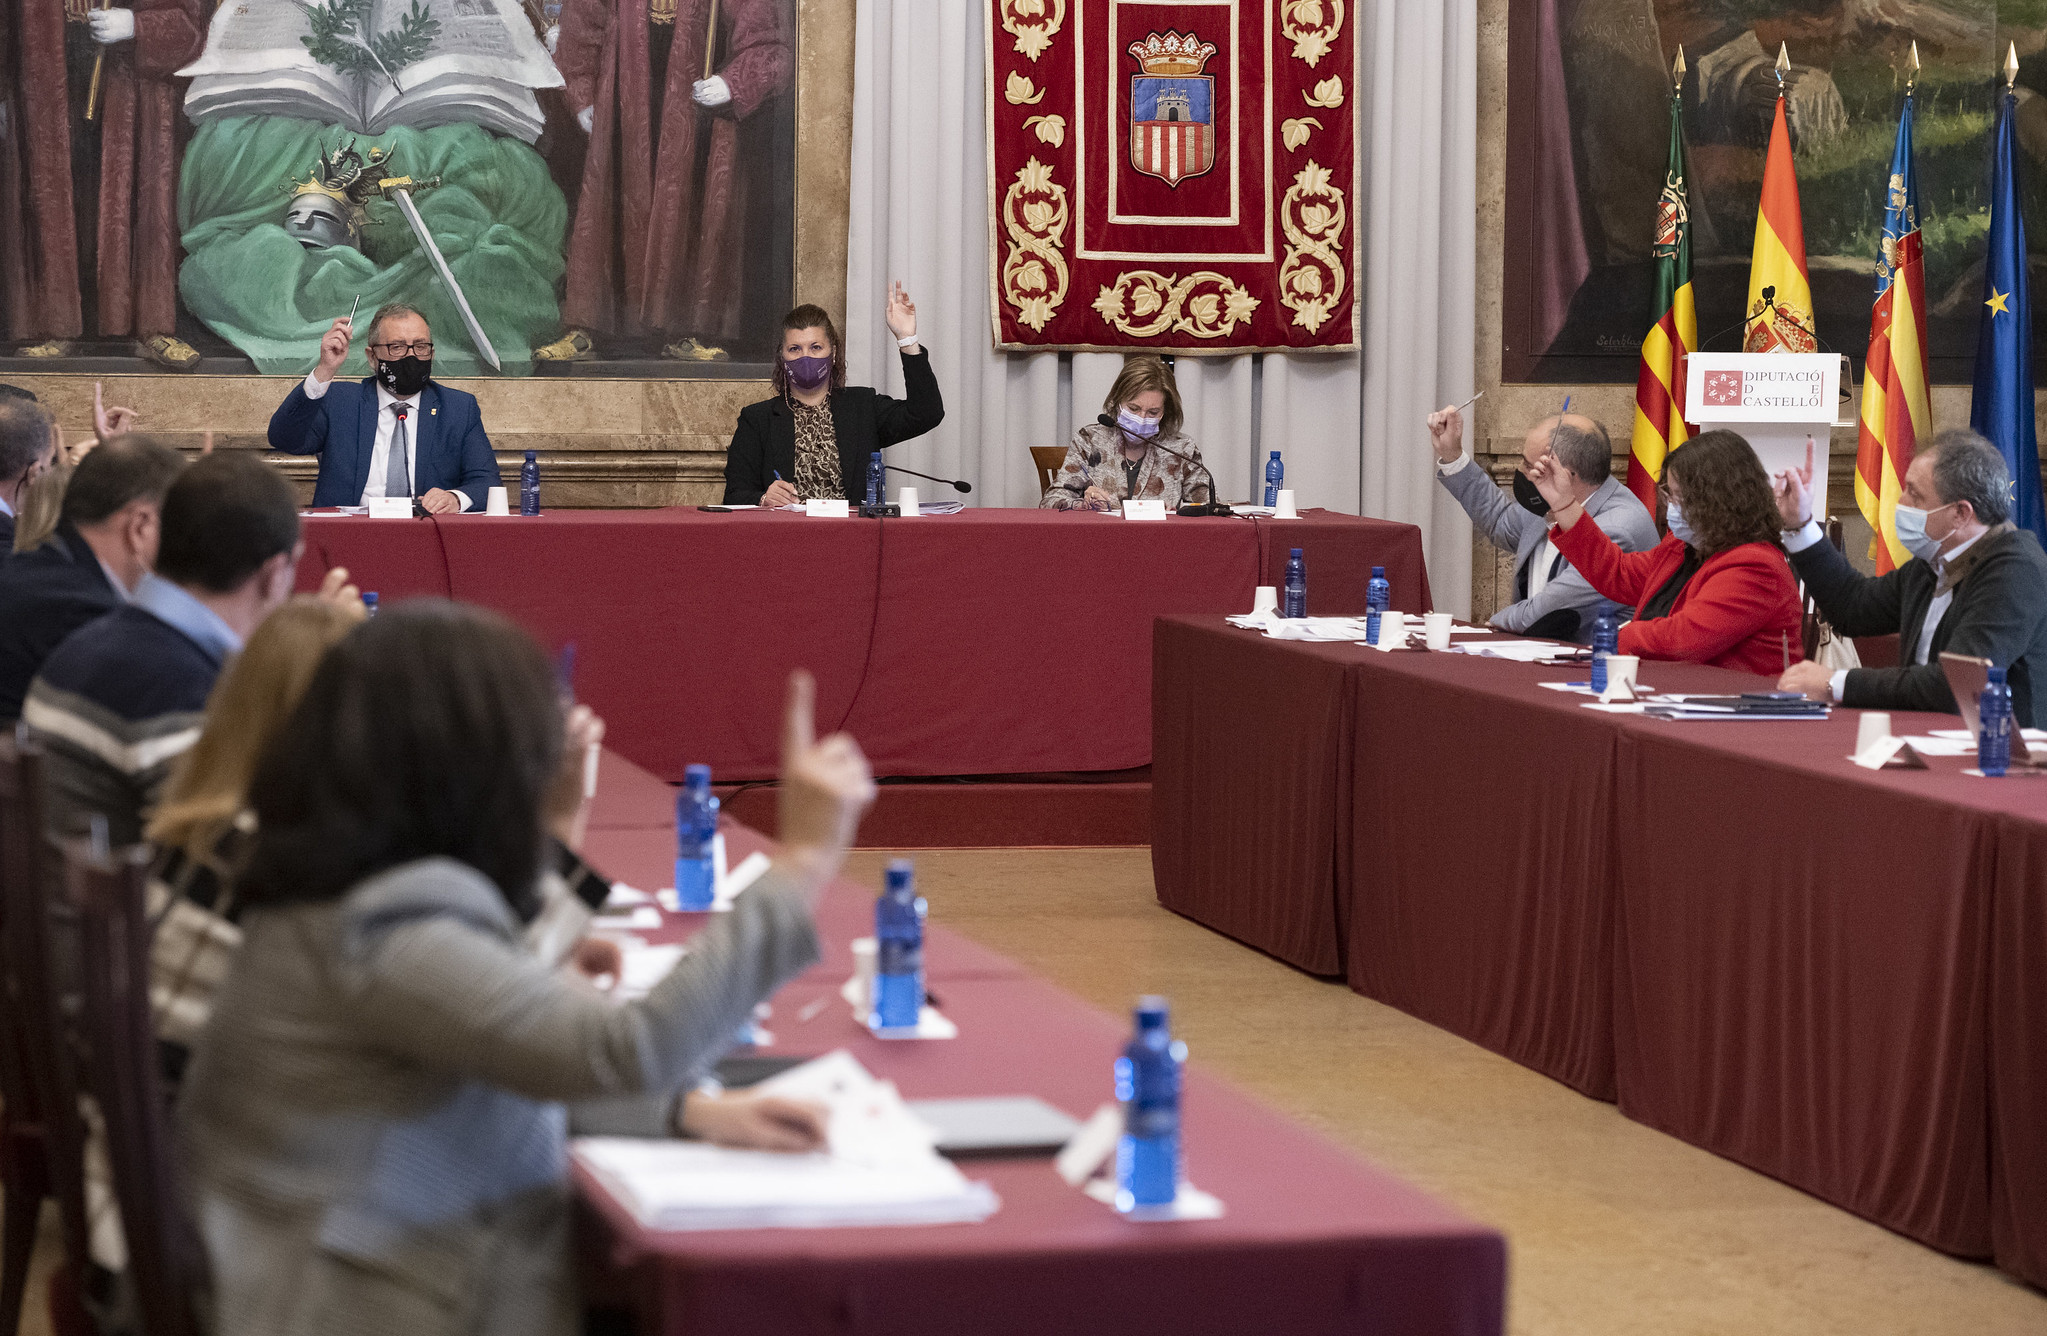 La Diputación de Castellón insta a crear un Plan de Salud Mental para eliminar tabúes y fomentar el tratamiento